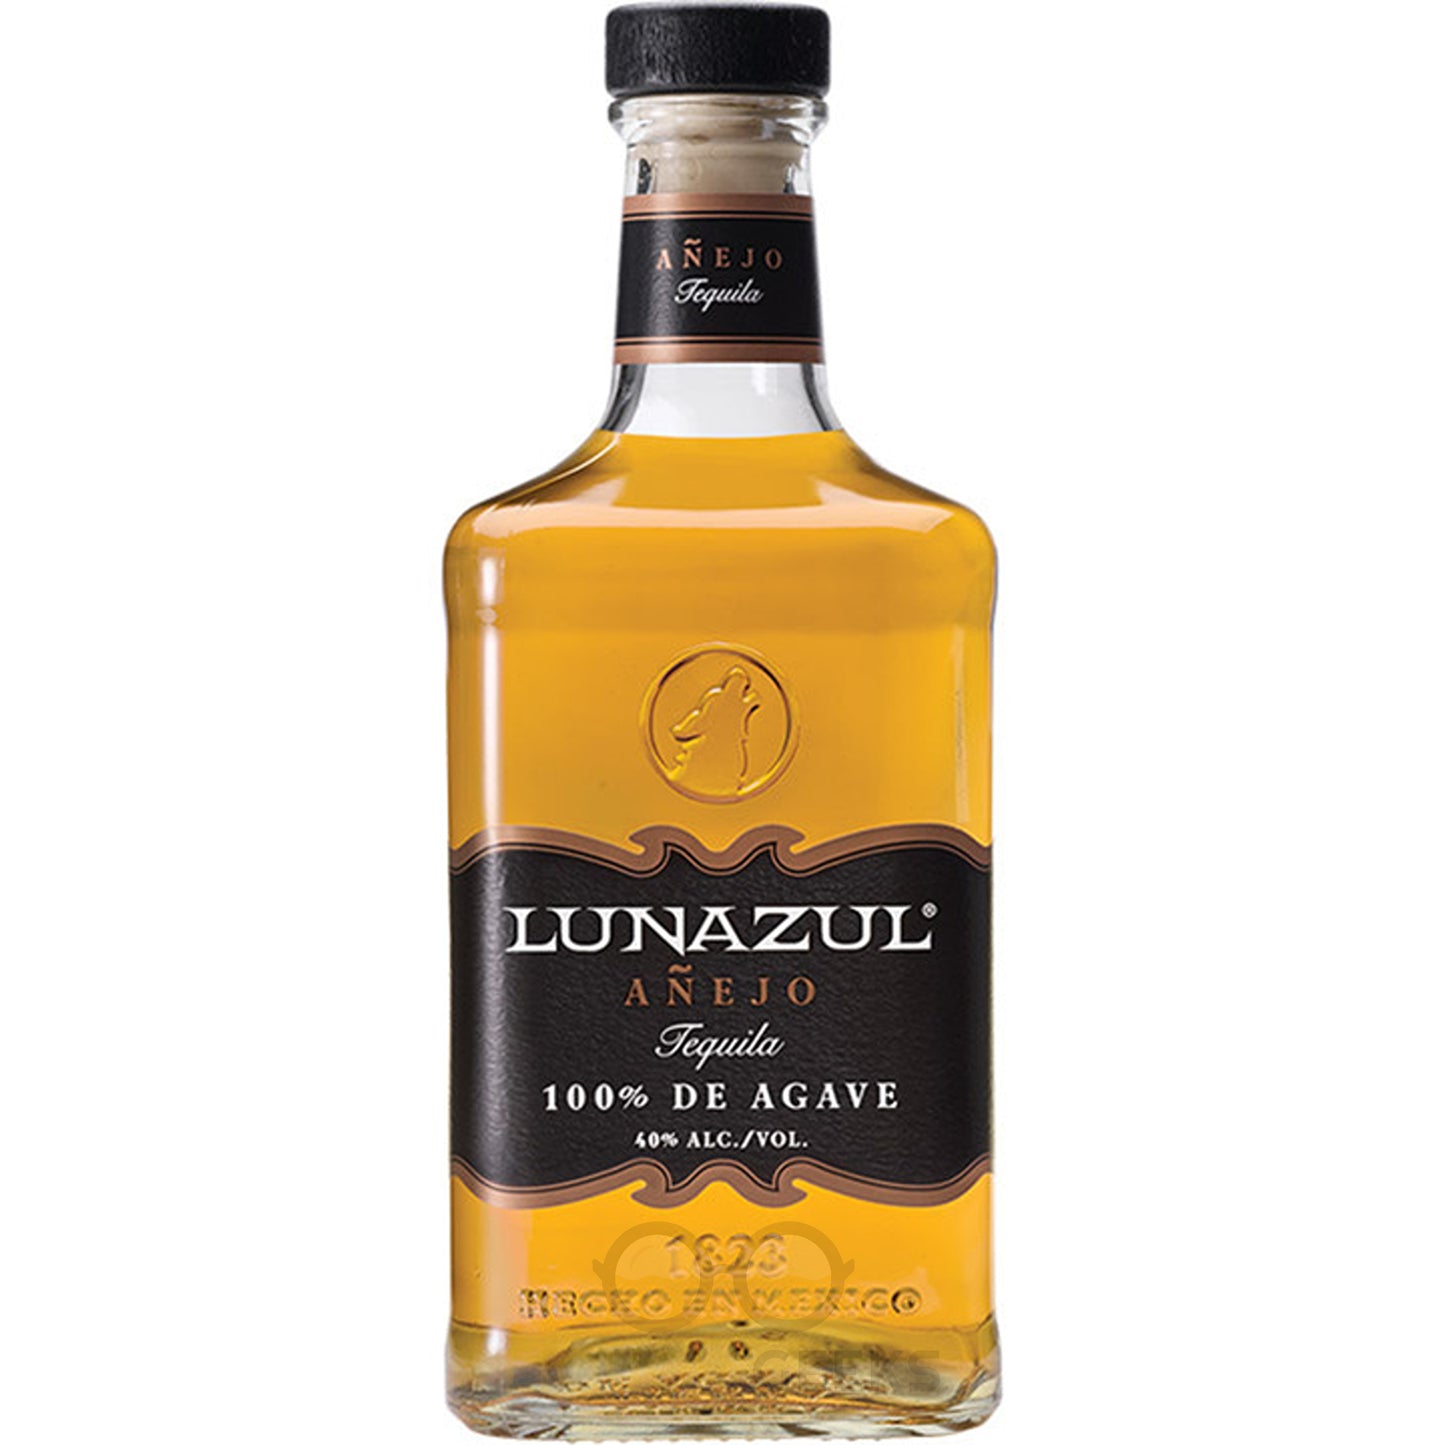 Lunazul Anejo - Liquor Geeks